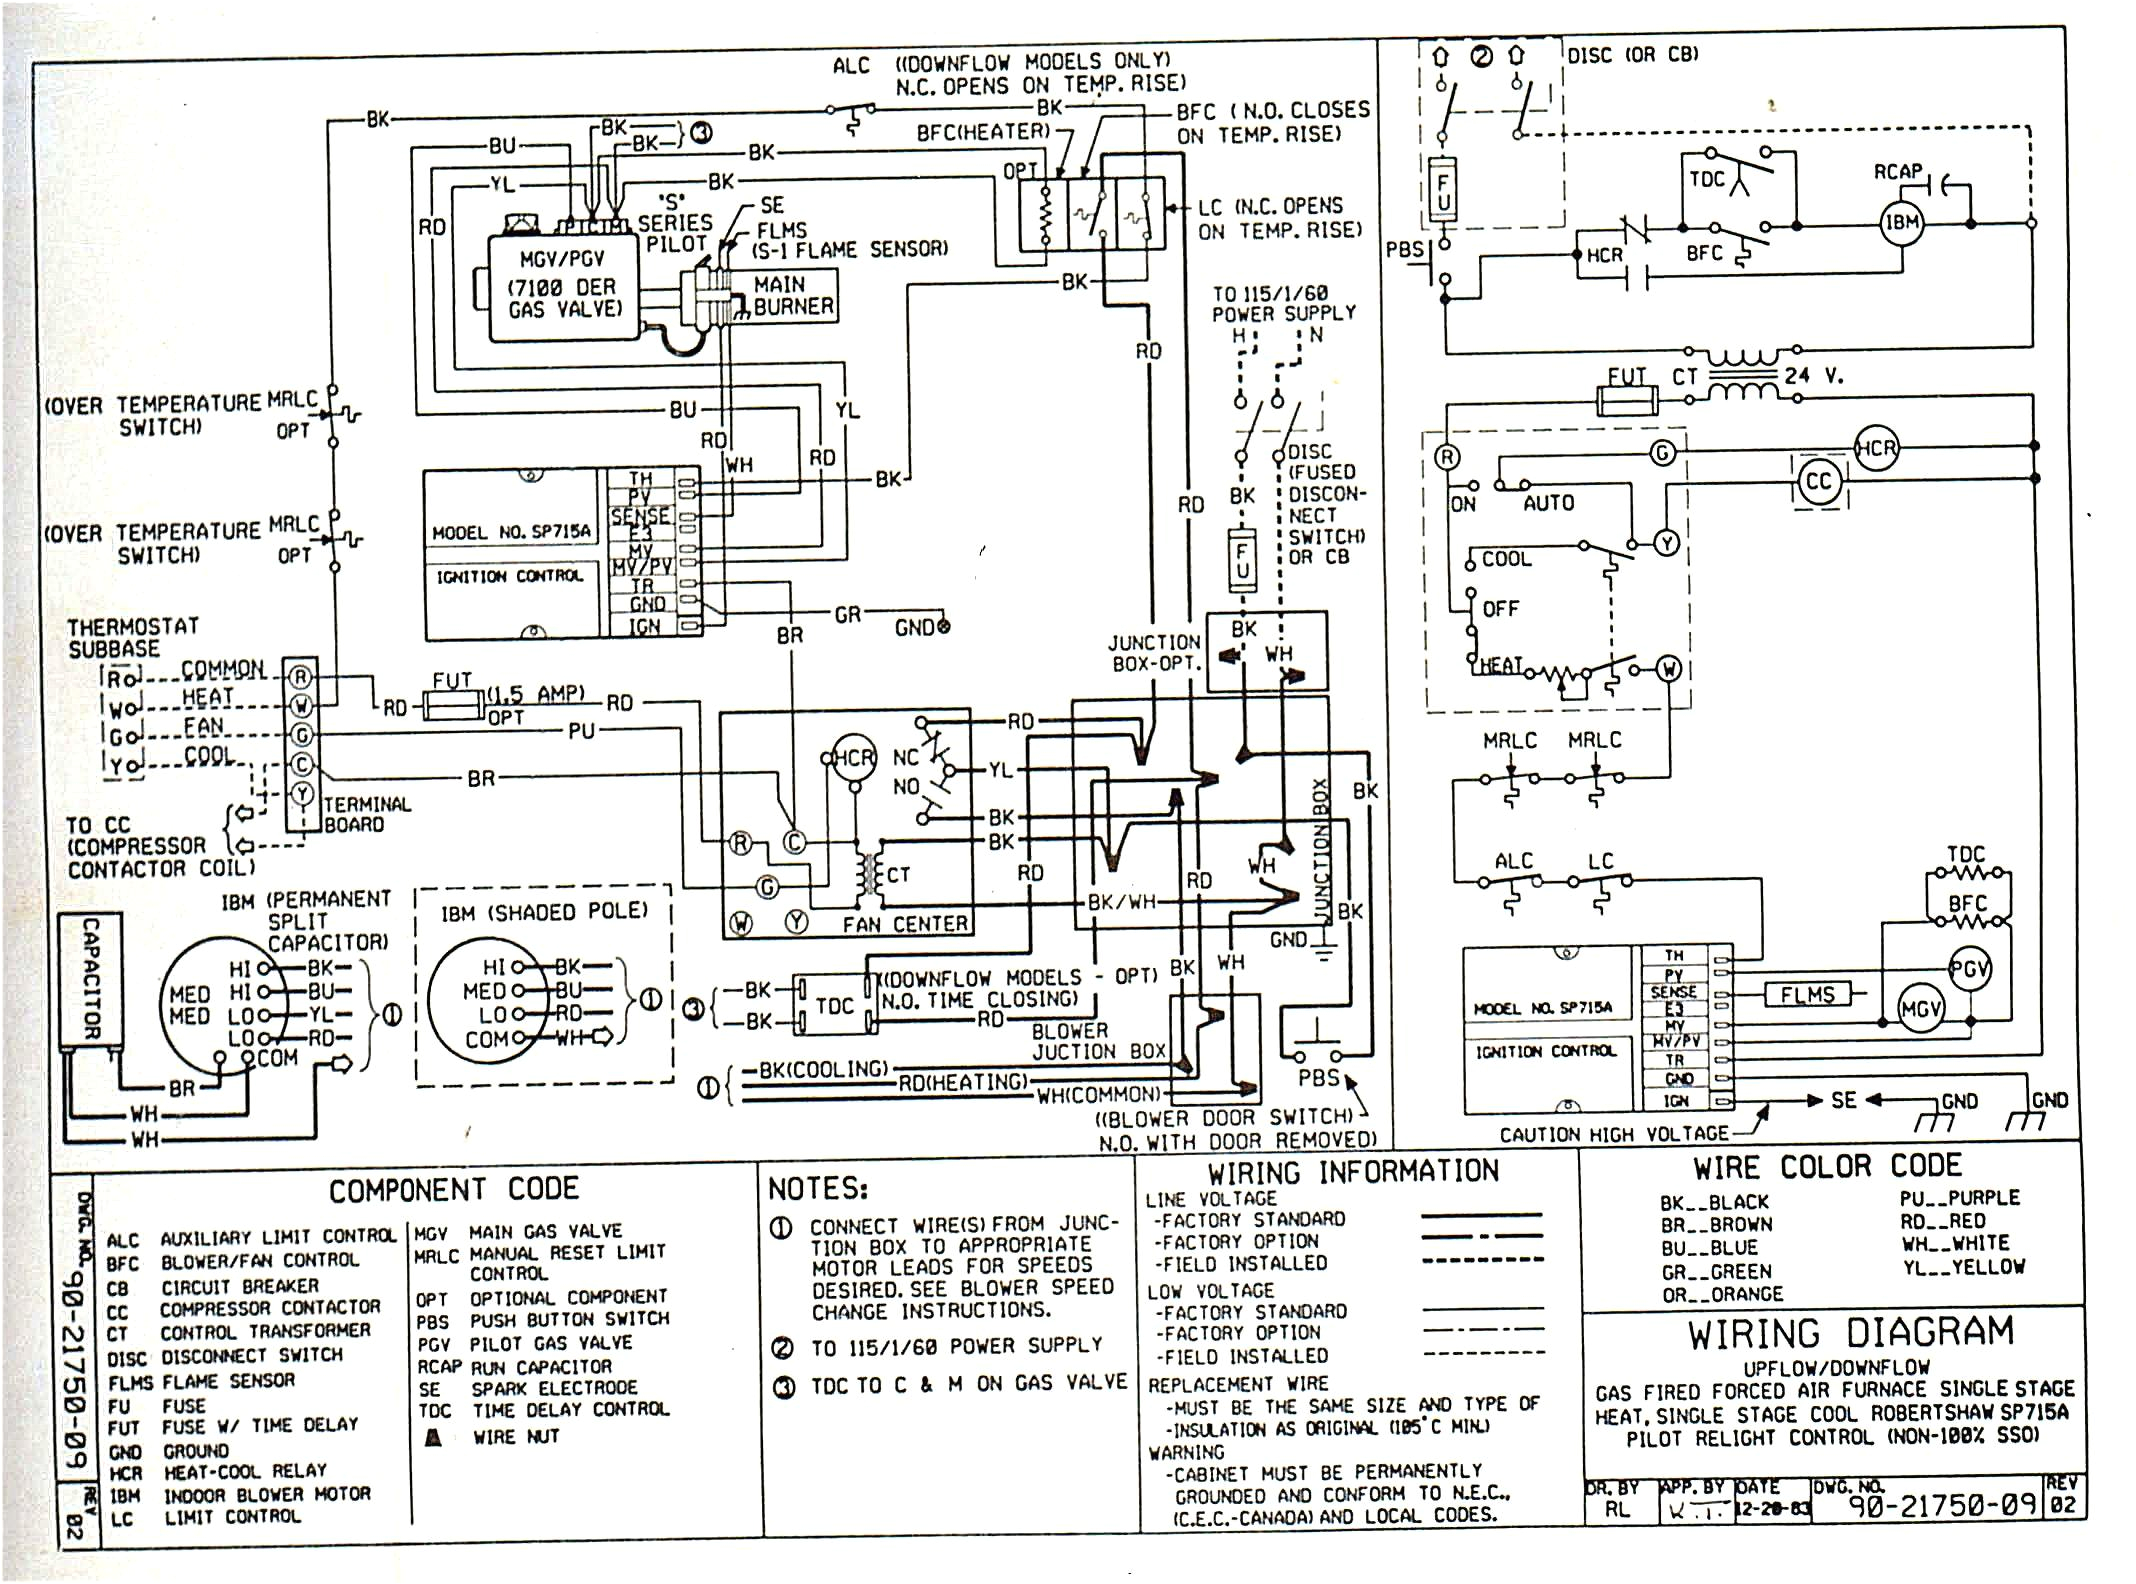 ga furnace relay wiring diagram